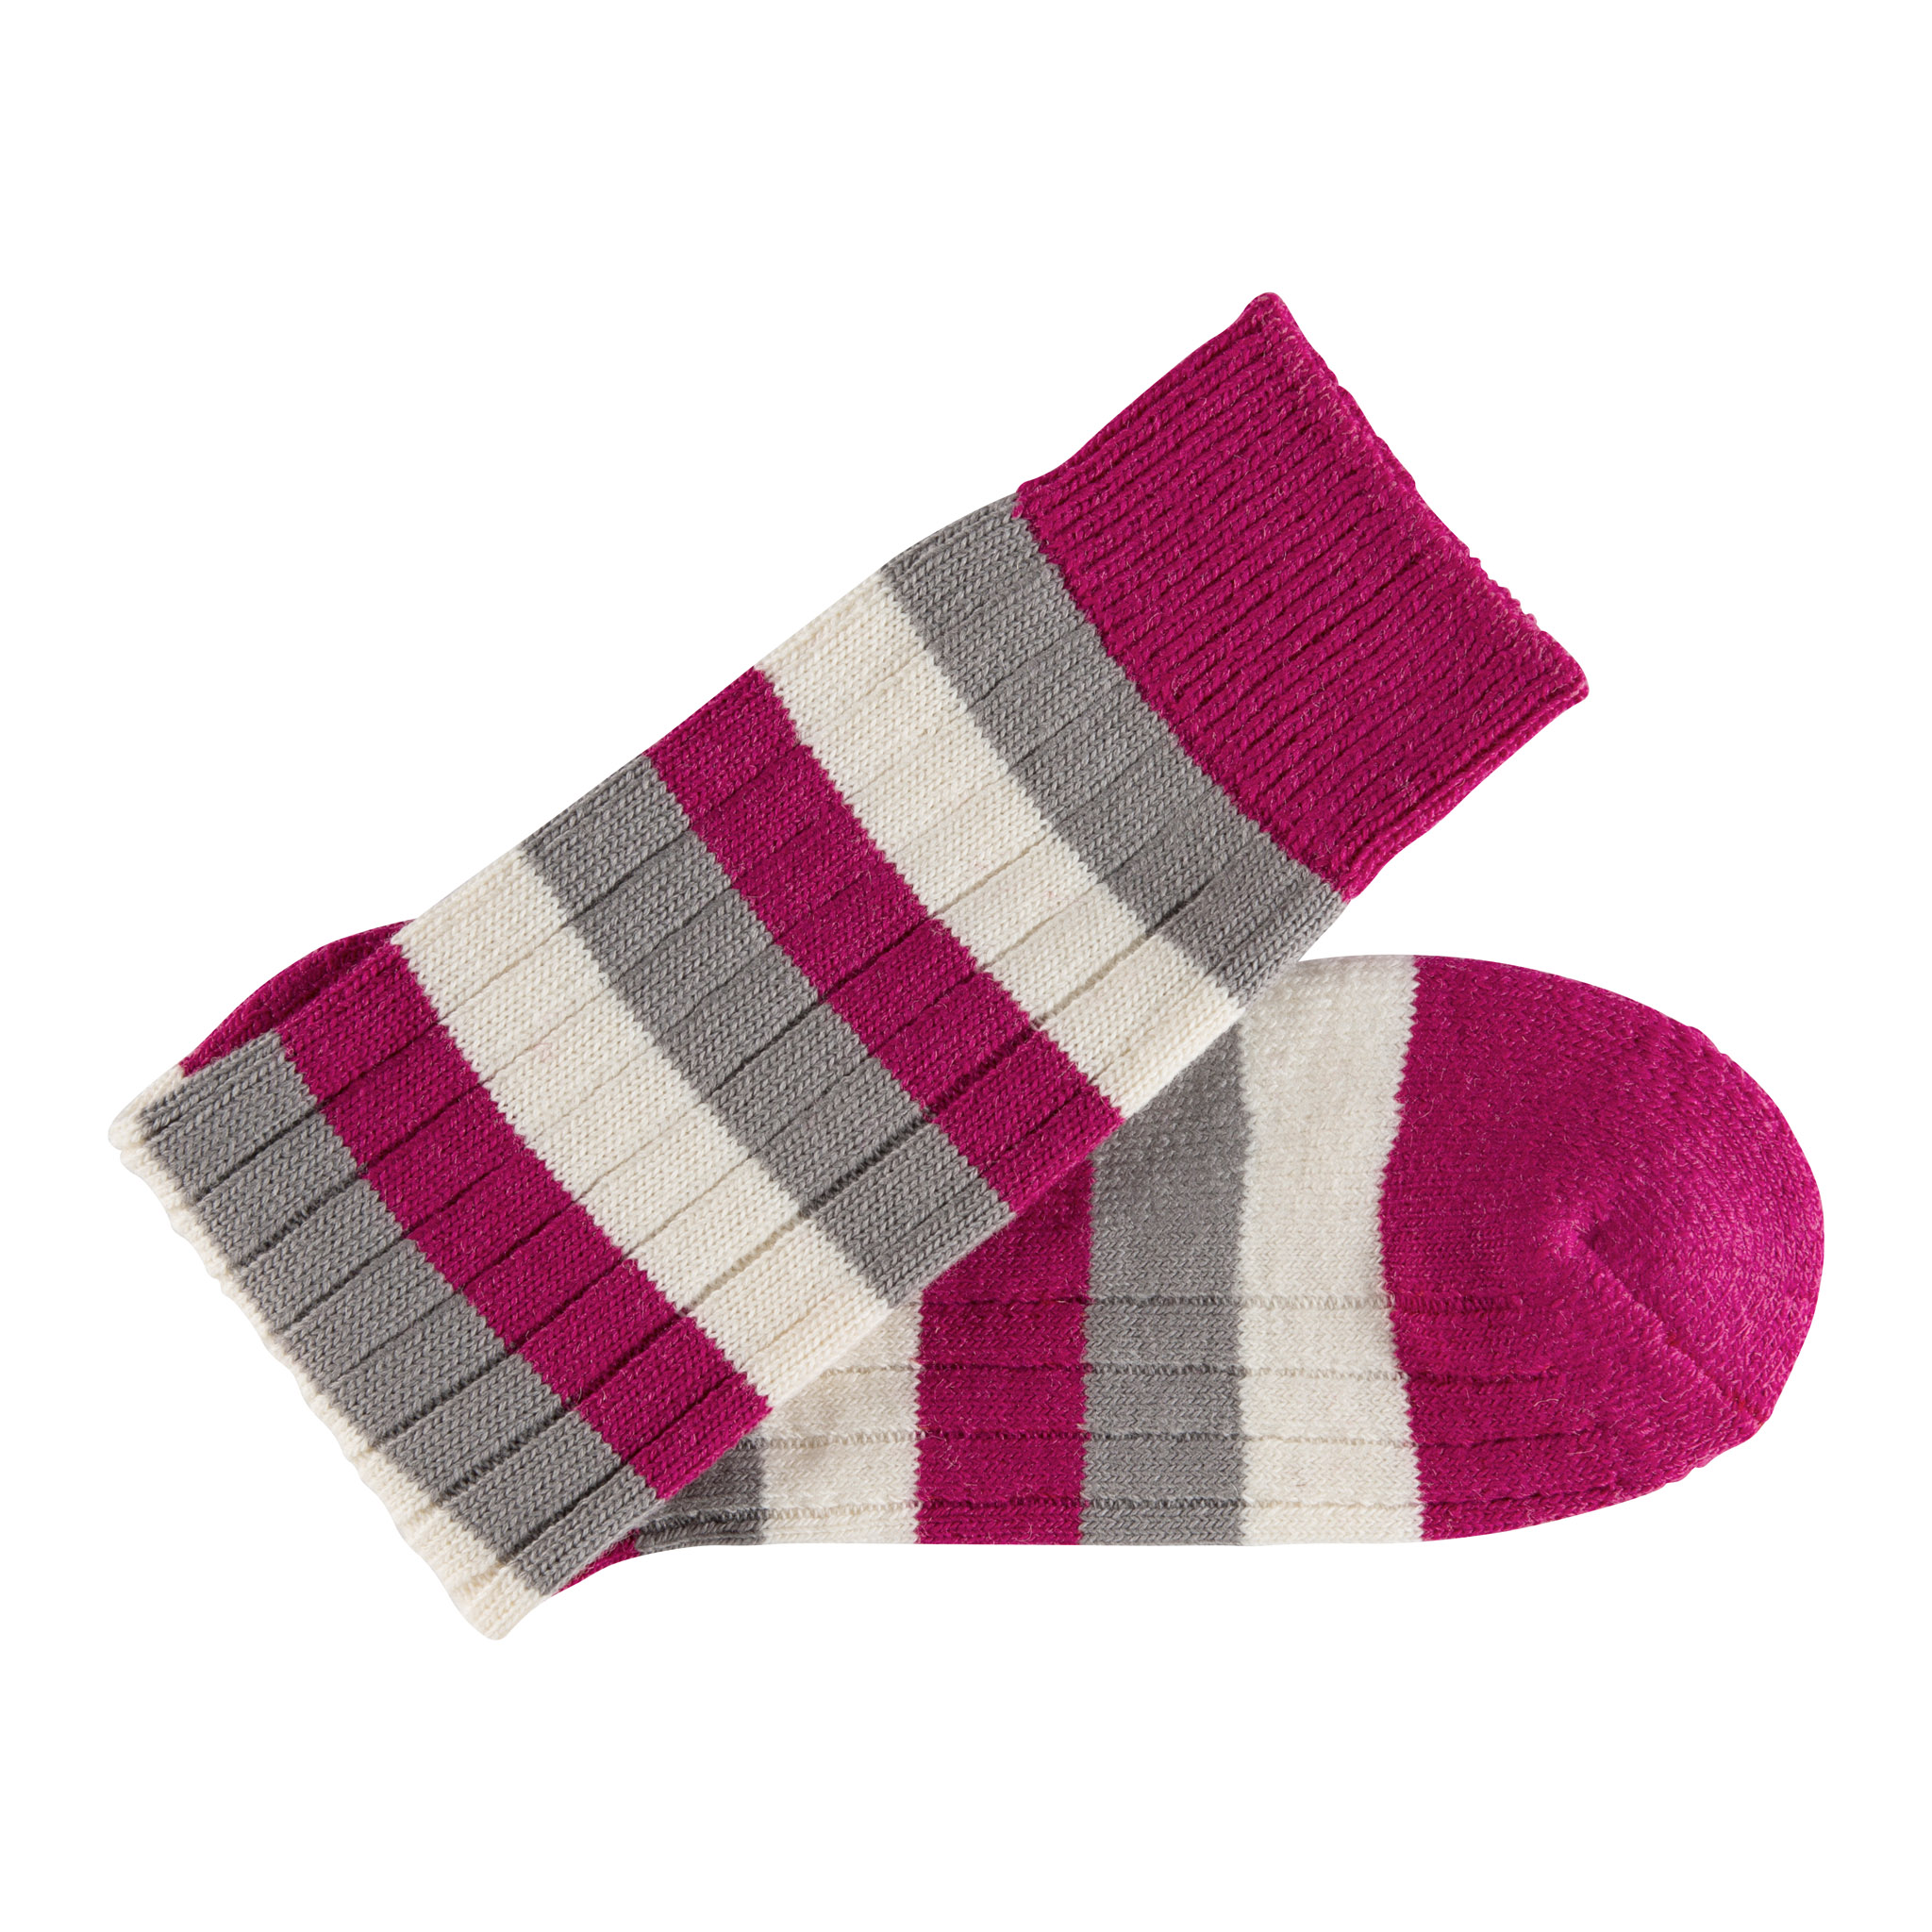 Merino Wool raspberry, grey and white stripe sock - folded